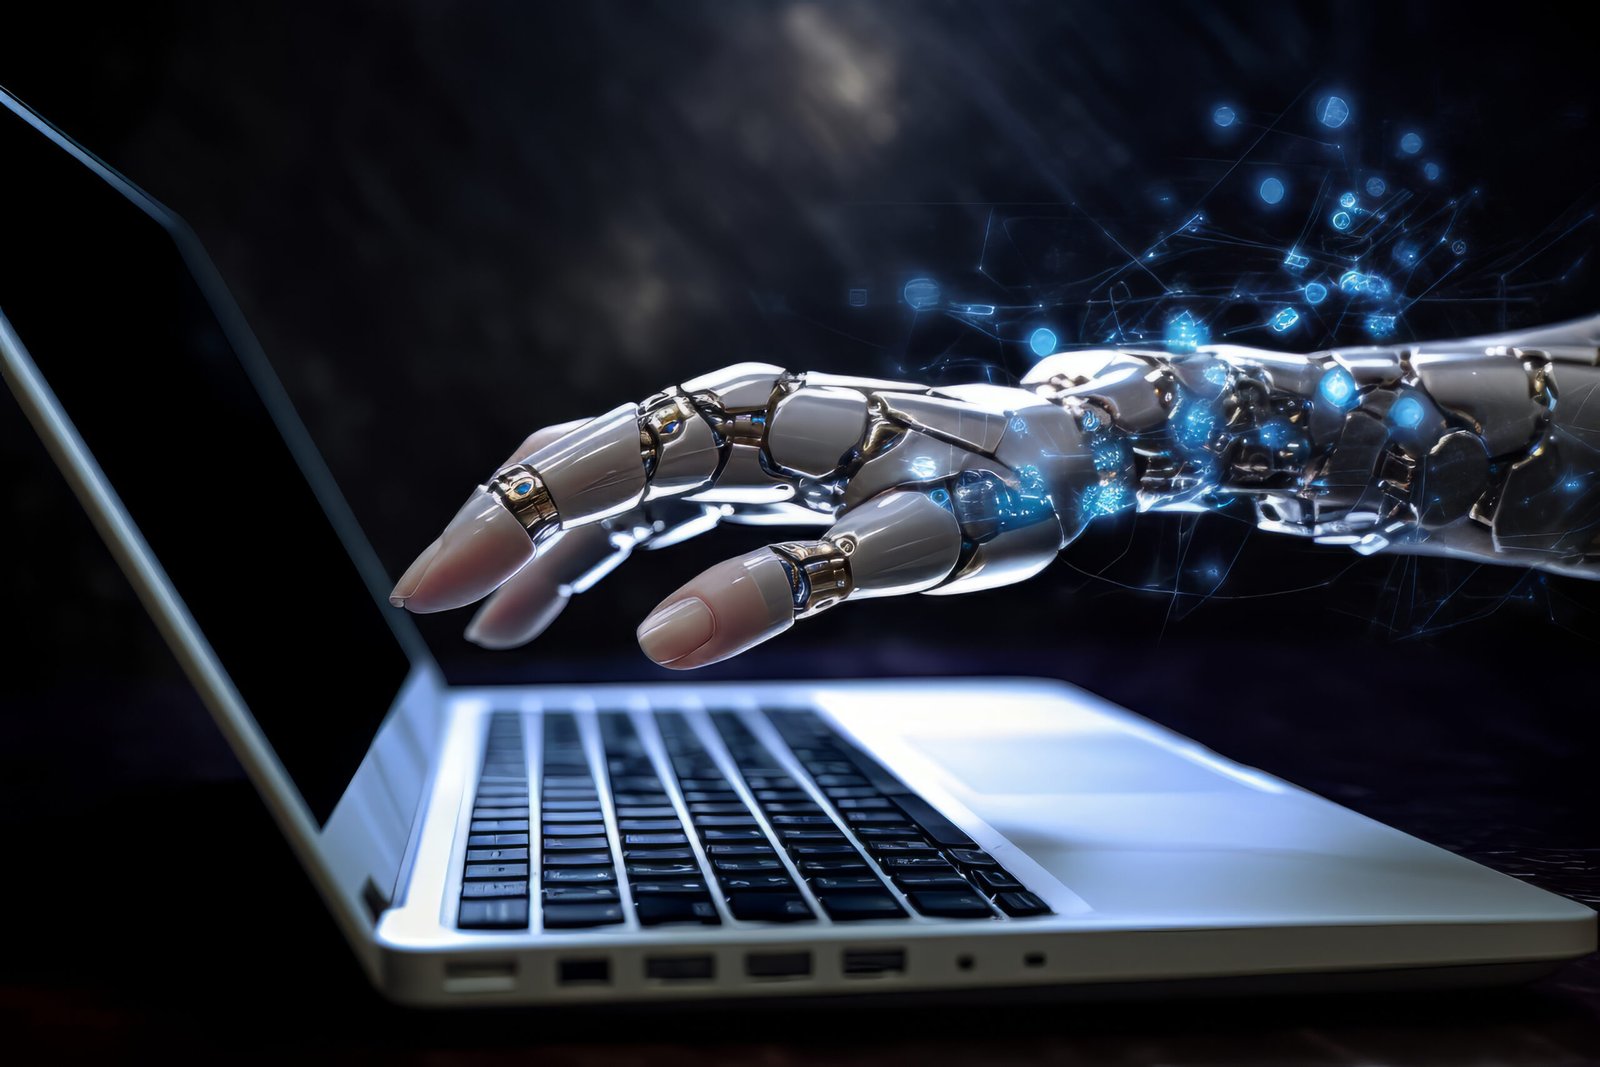 Mão robótica se transformando em mão humana em um computador